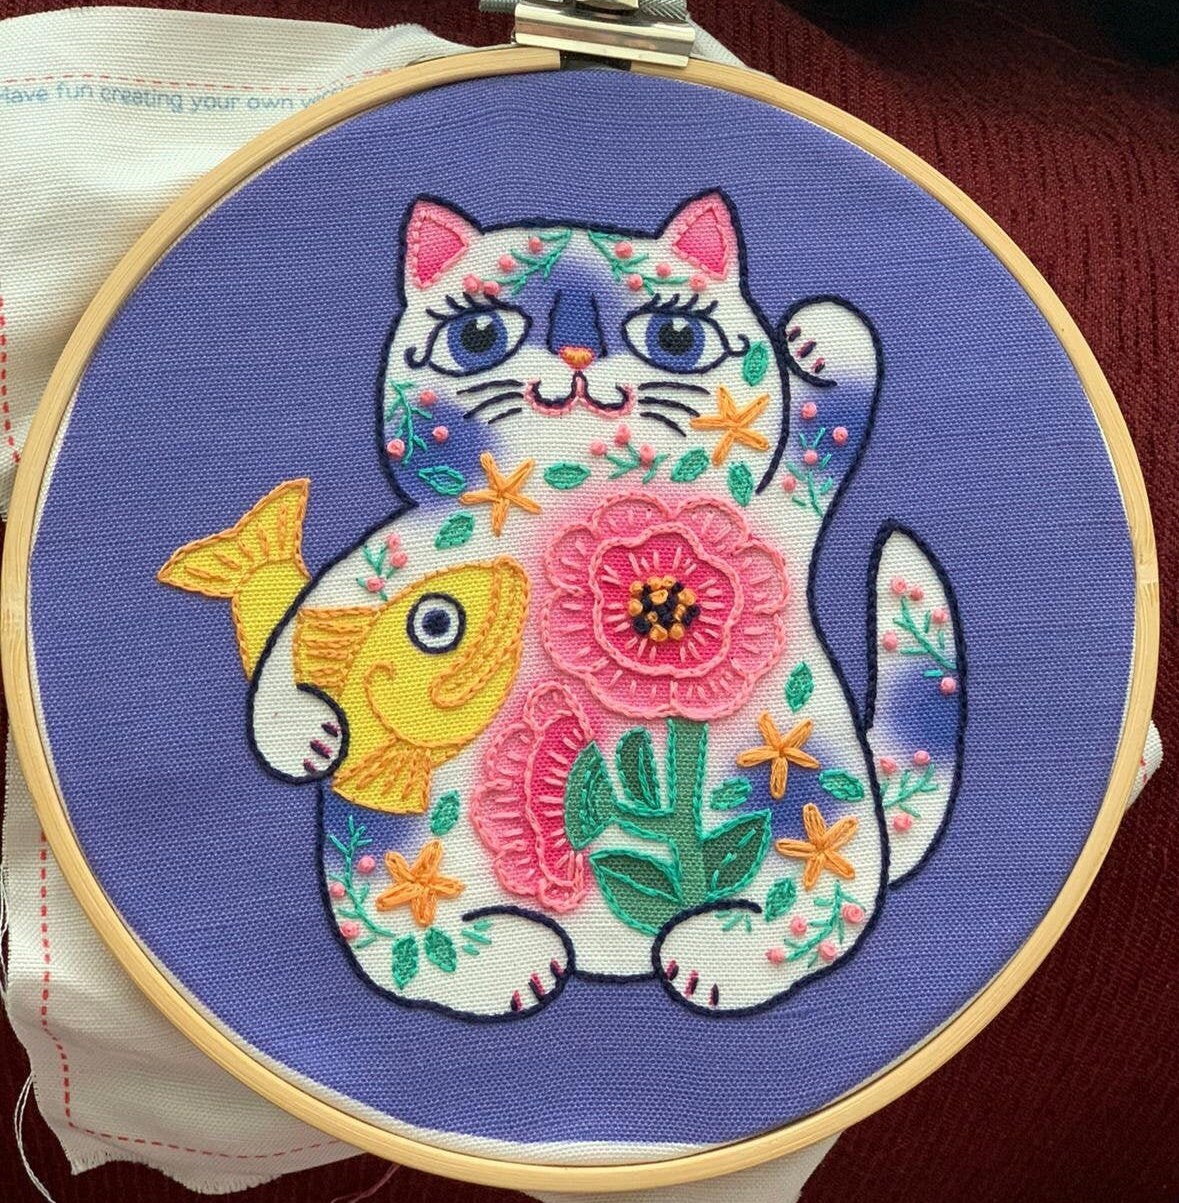 Hand Embroidery Kit Maneki Neko Cat Design Lucky Needlepoint Kitty